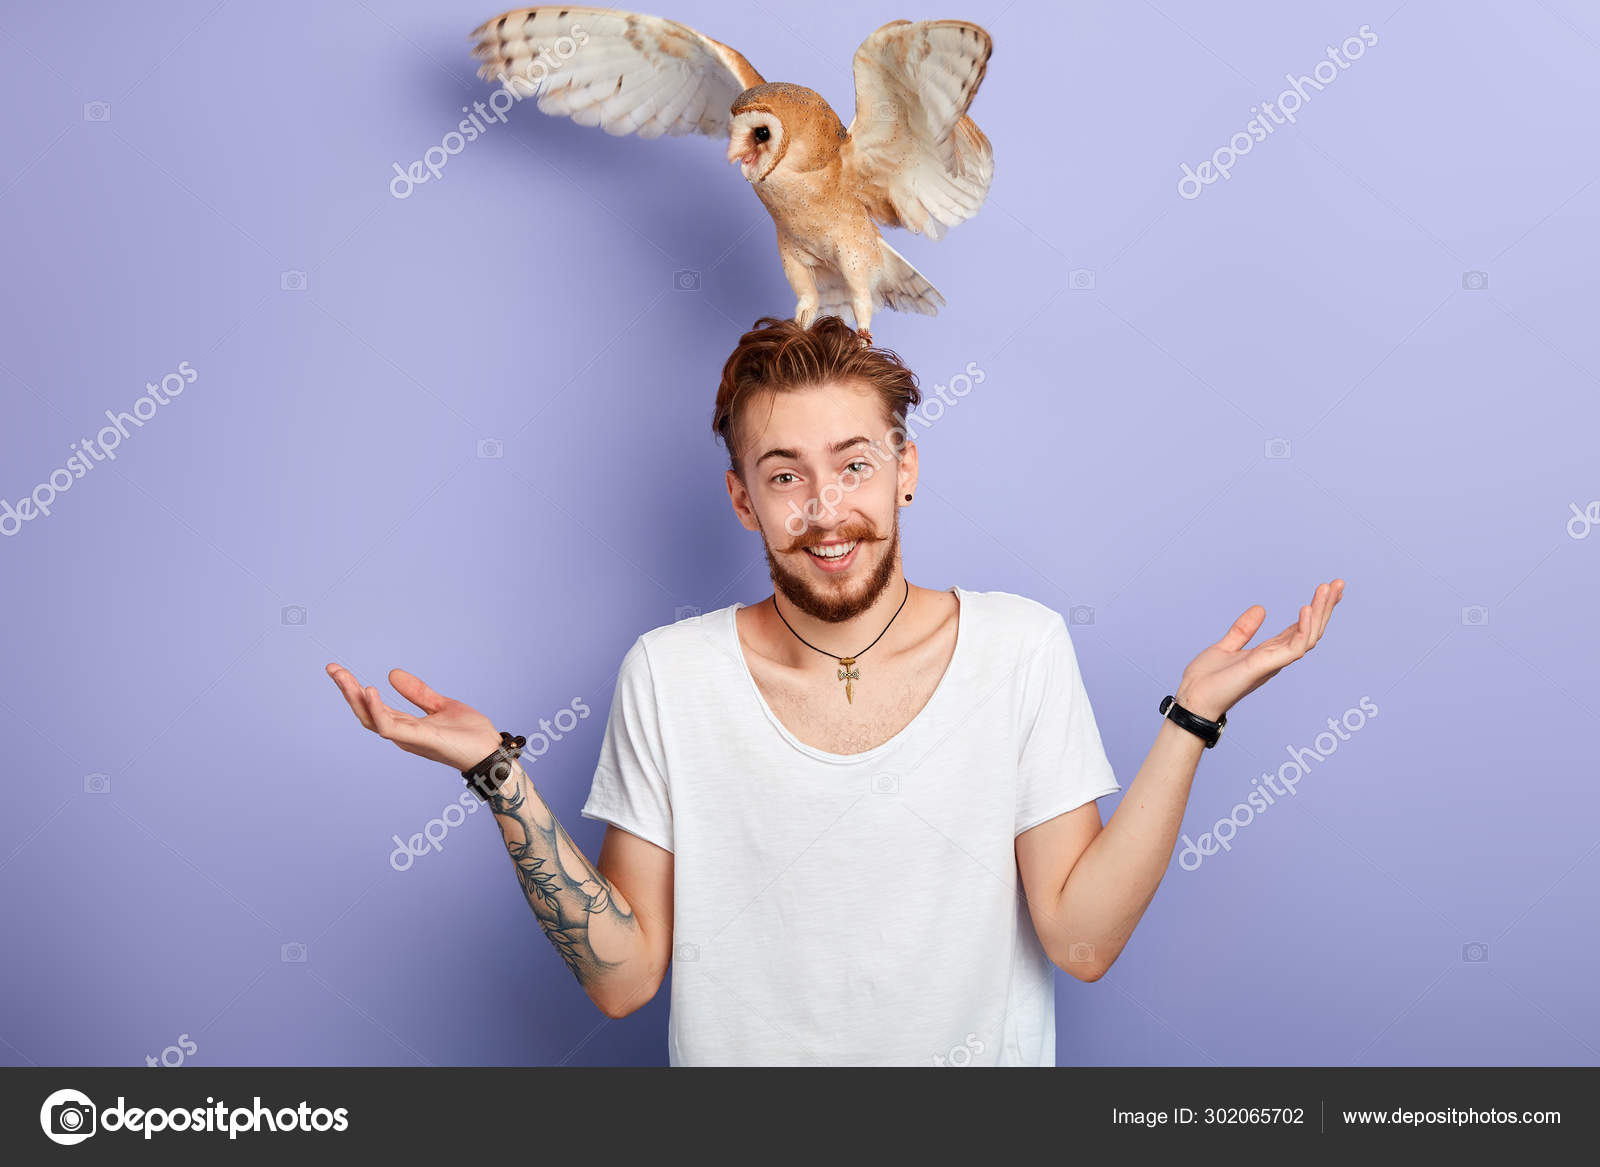 Rolig ung man med en fågel på huvudet rycker axlar — Stockfotografi ©  ufabizphoto #302065702